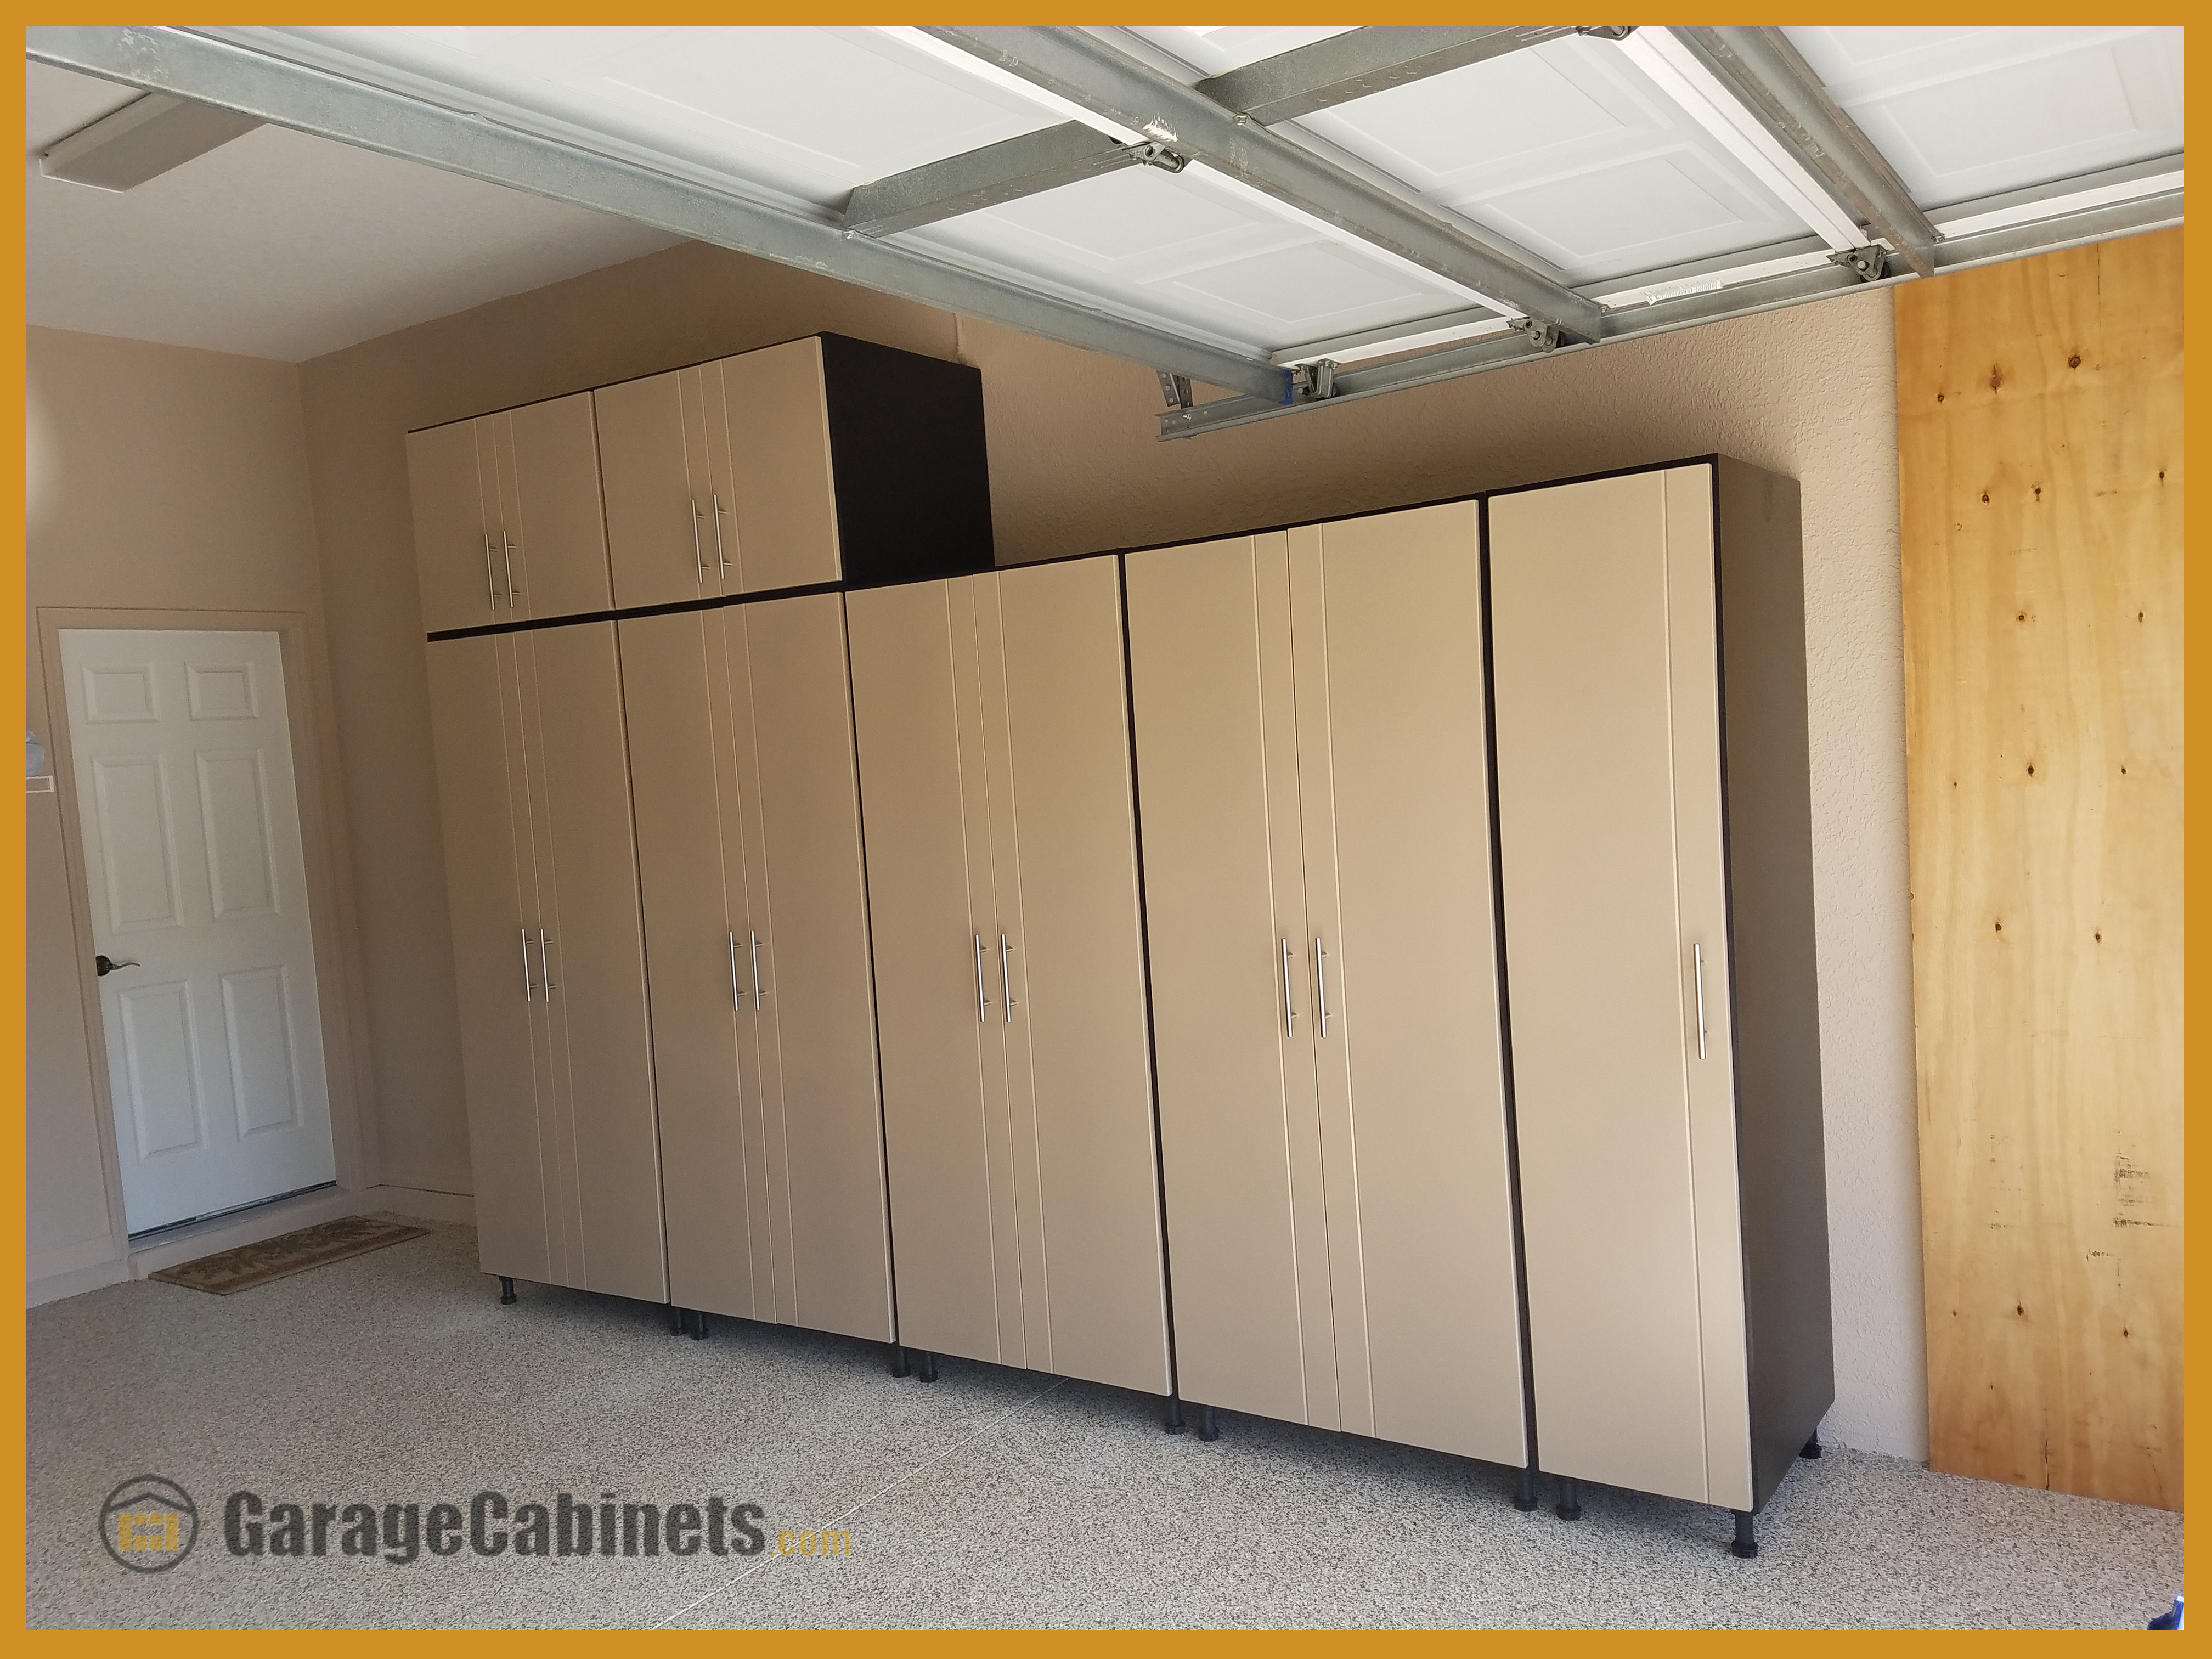 WorkSpace Garage Cabinets organized garage images